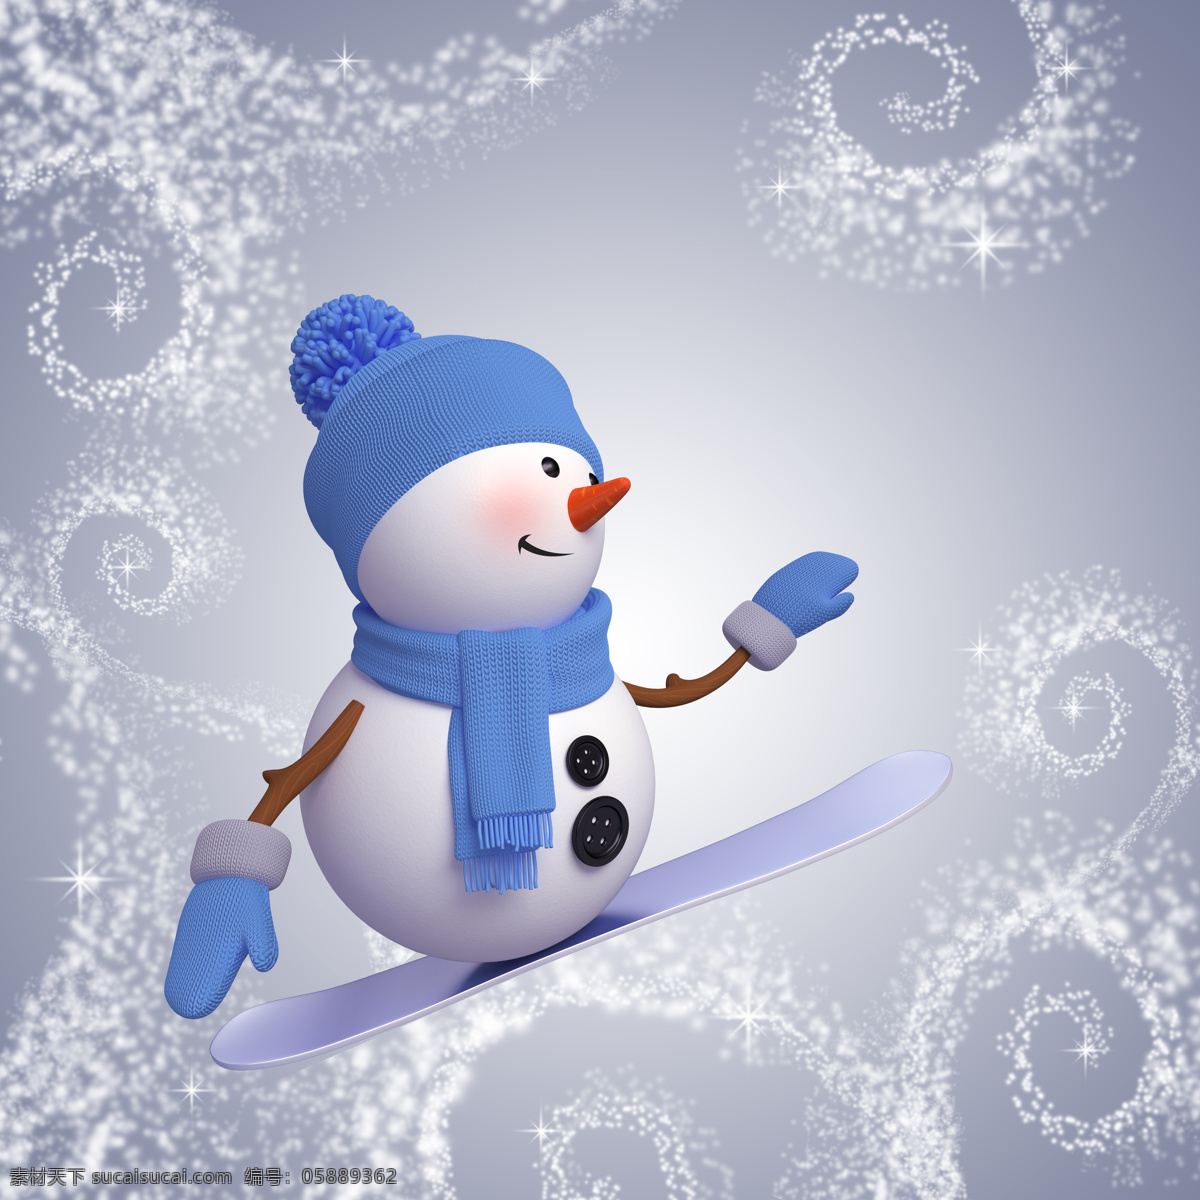 可爱卡通雪人 可爱 卡通 雪人 圣诞节 冬季 雪花 动漫动画